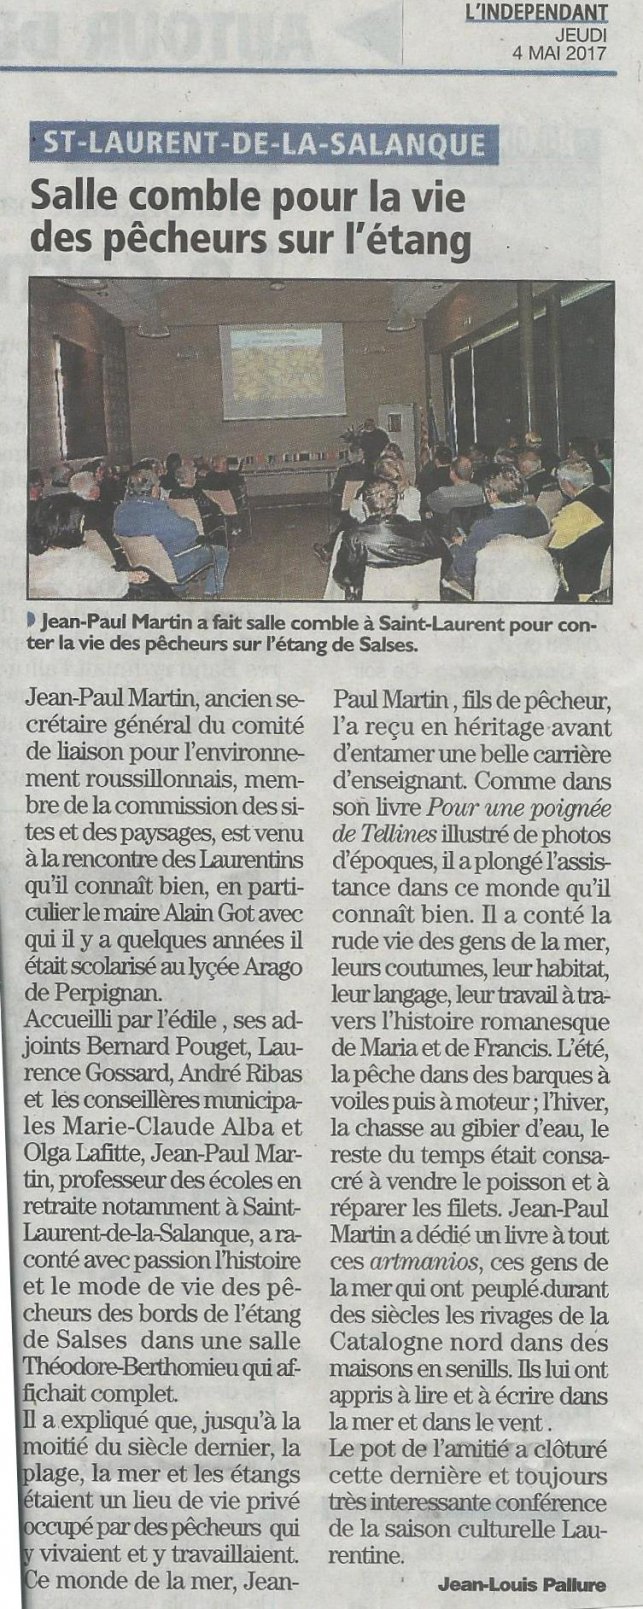 Les catalans ont suivi avec passion  St Laurent de la Salanque la vie des pcheurs conte par Jean-Paul Martin ...